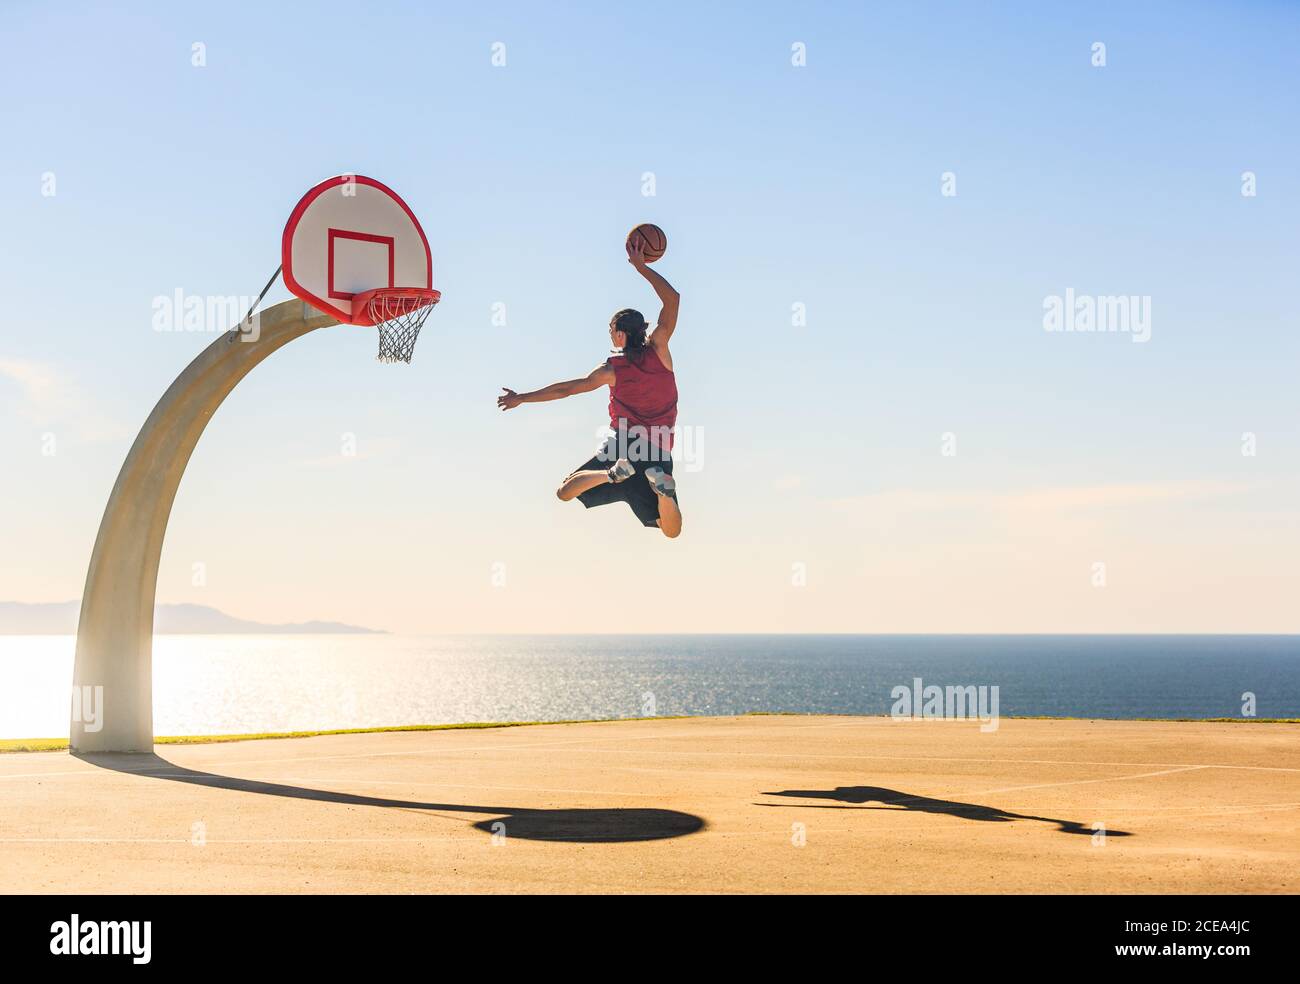 Un joueur de basket-ball qui a obtenu une incroyable punk énergique sur le terrain de ballon de rue avec vue sur l'océan comme arrière-plan. Sports, motivation et dynamisation. Banque D'Images